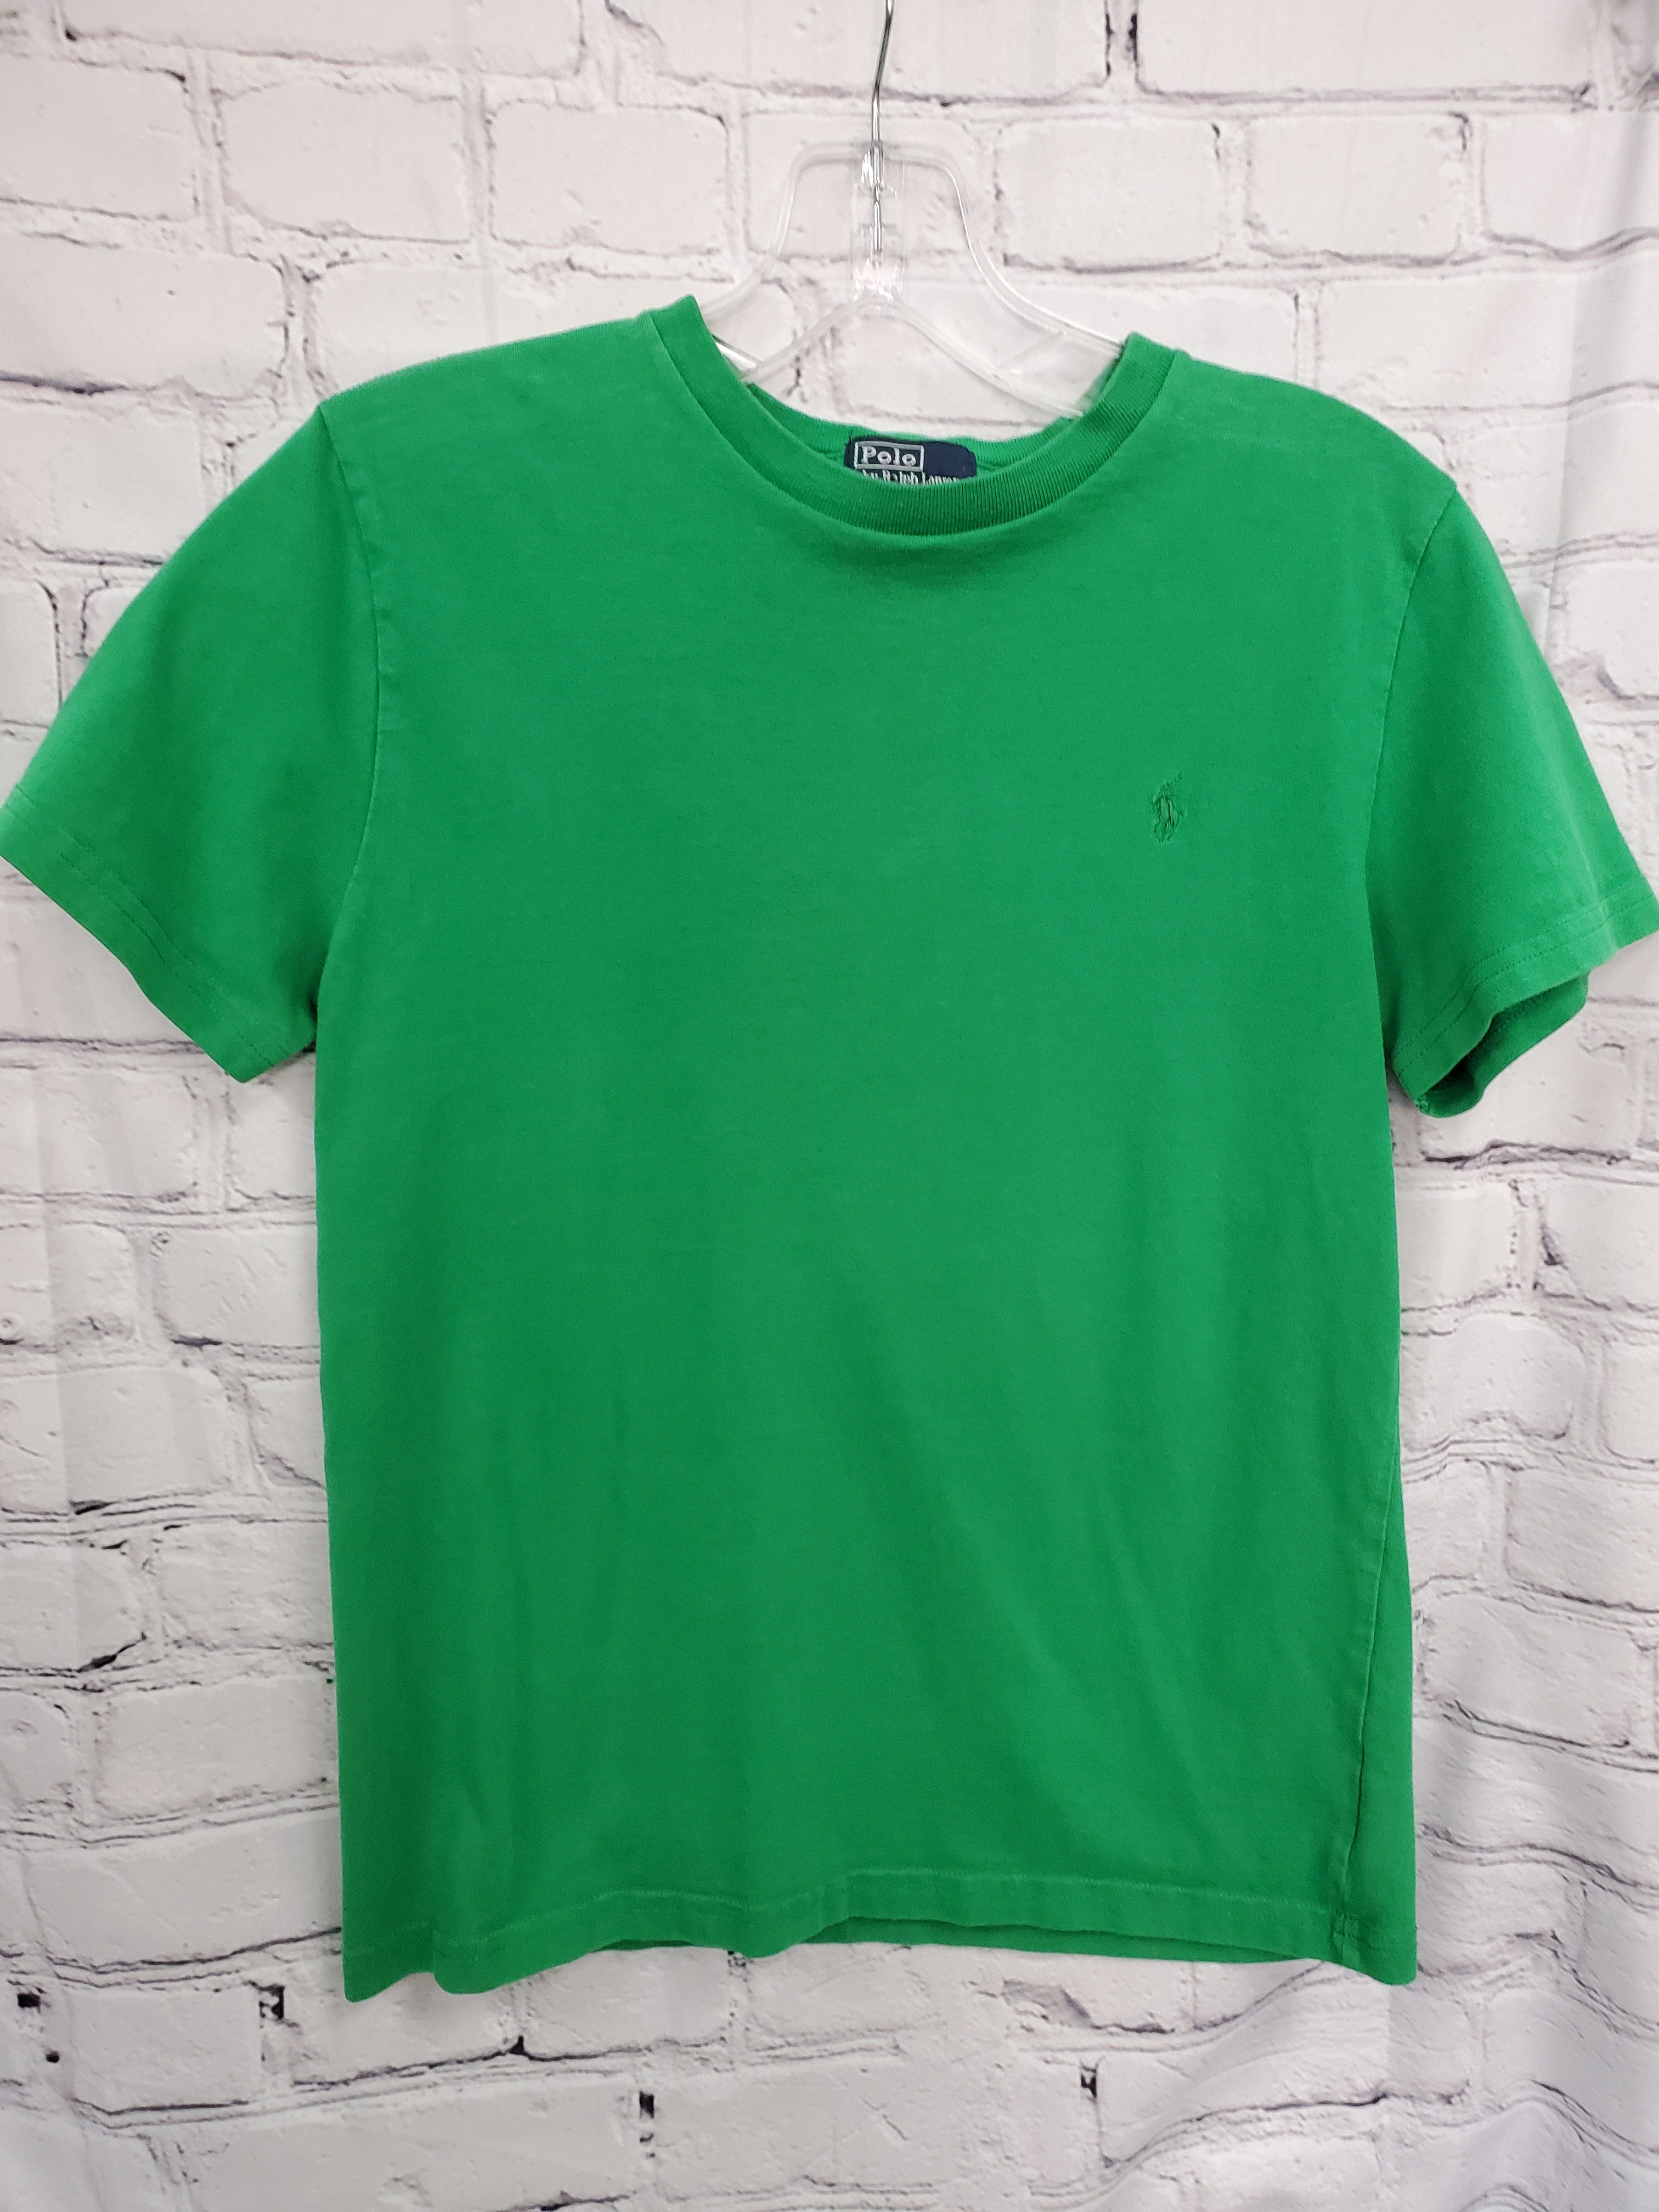 Ralph Lauren boys tshirt green S/S 10